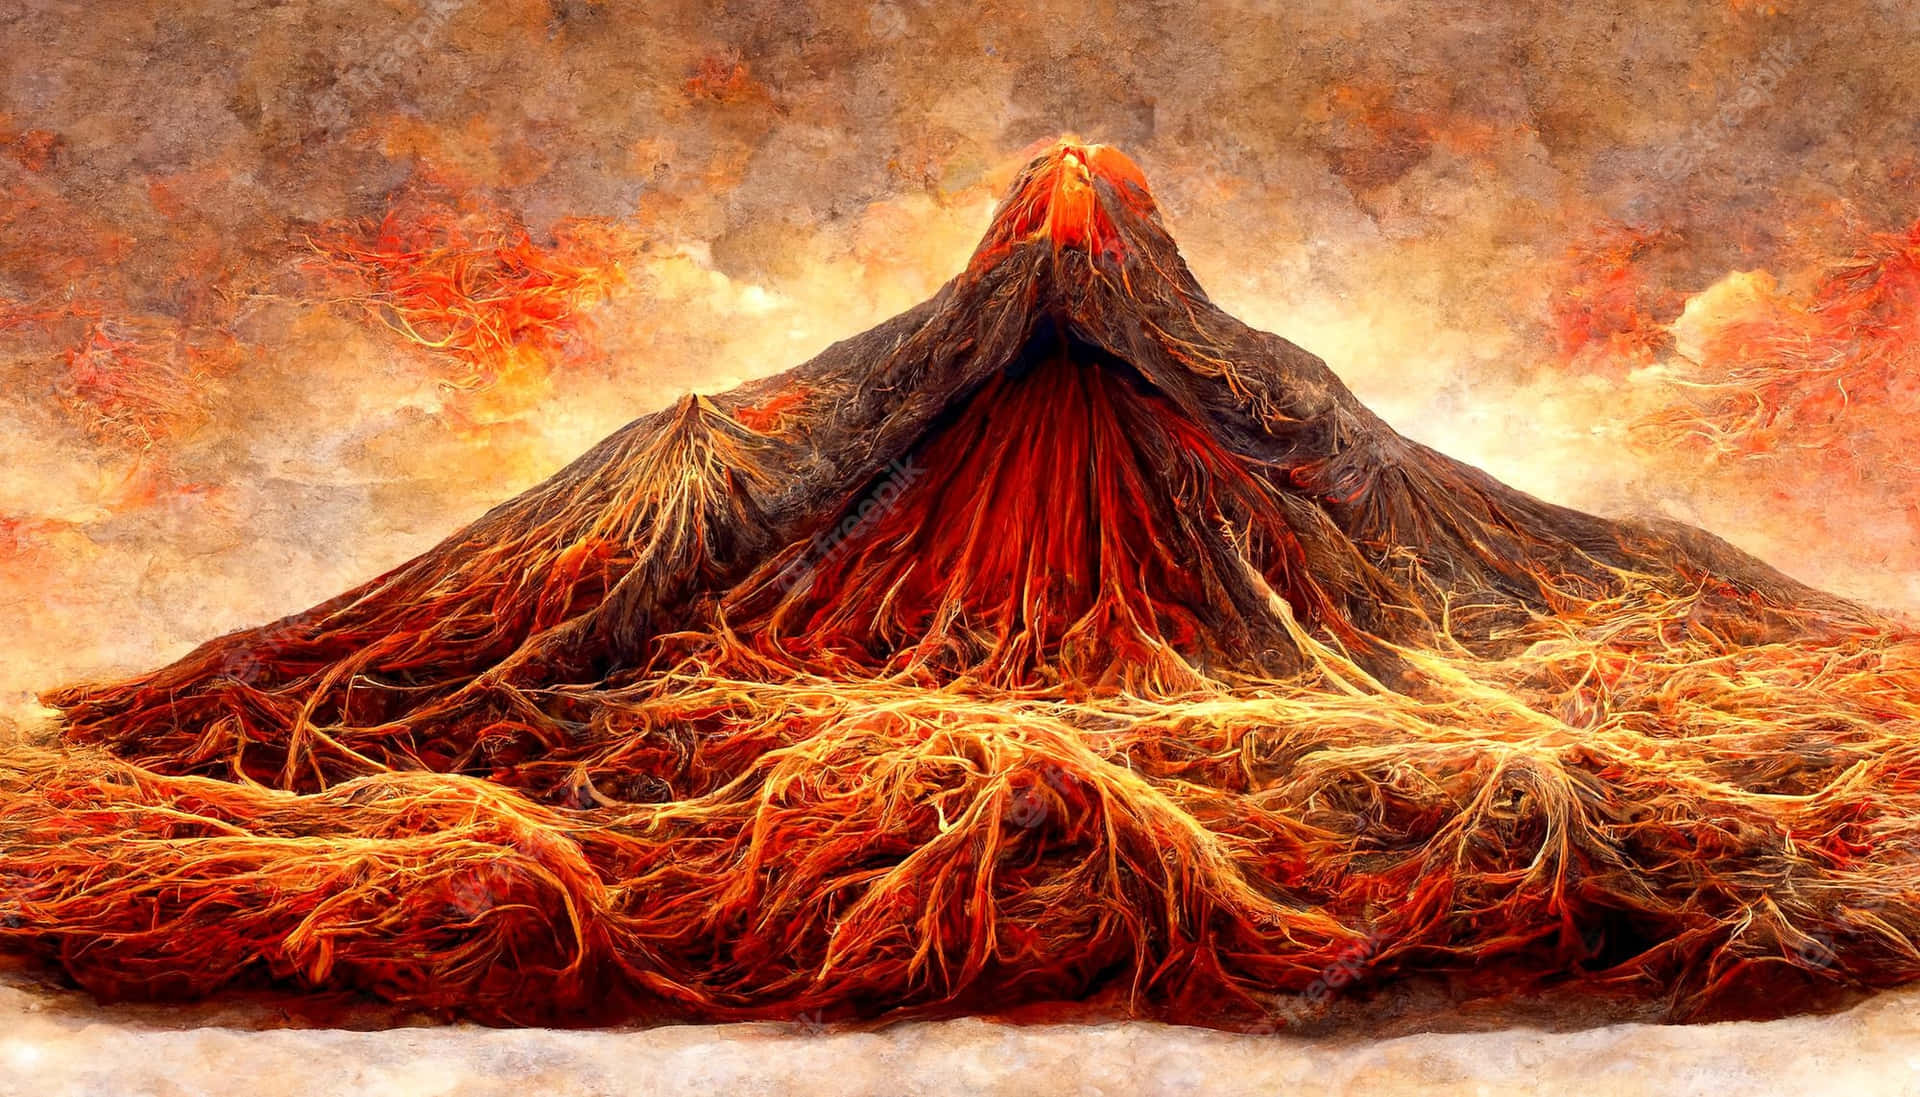 Uncielo Rosso E Arancione Vibrante Illuminato Dall'eruzione Di Un Vulcano.